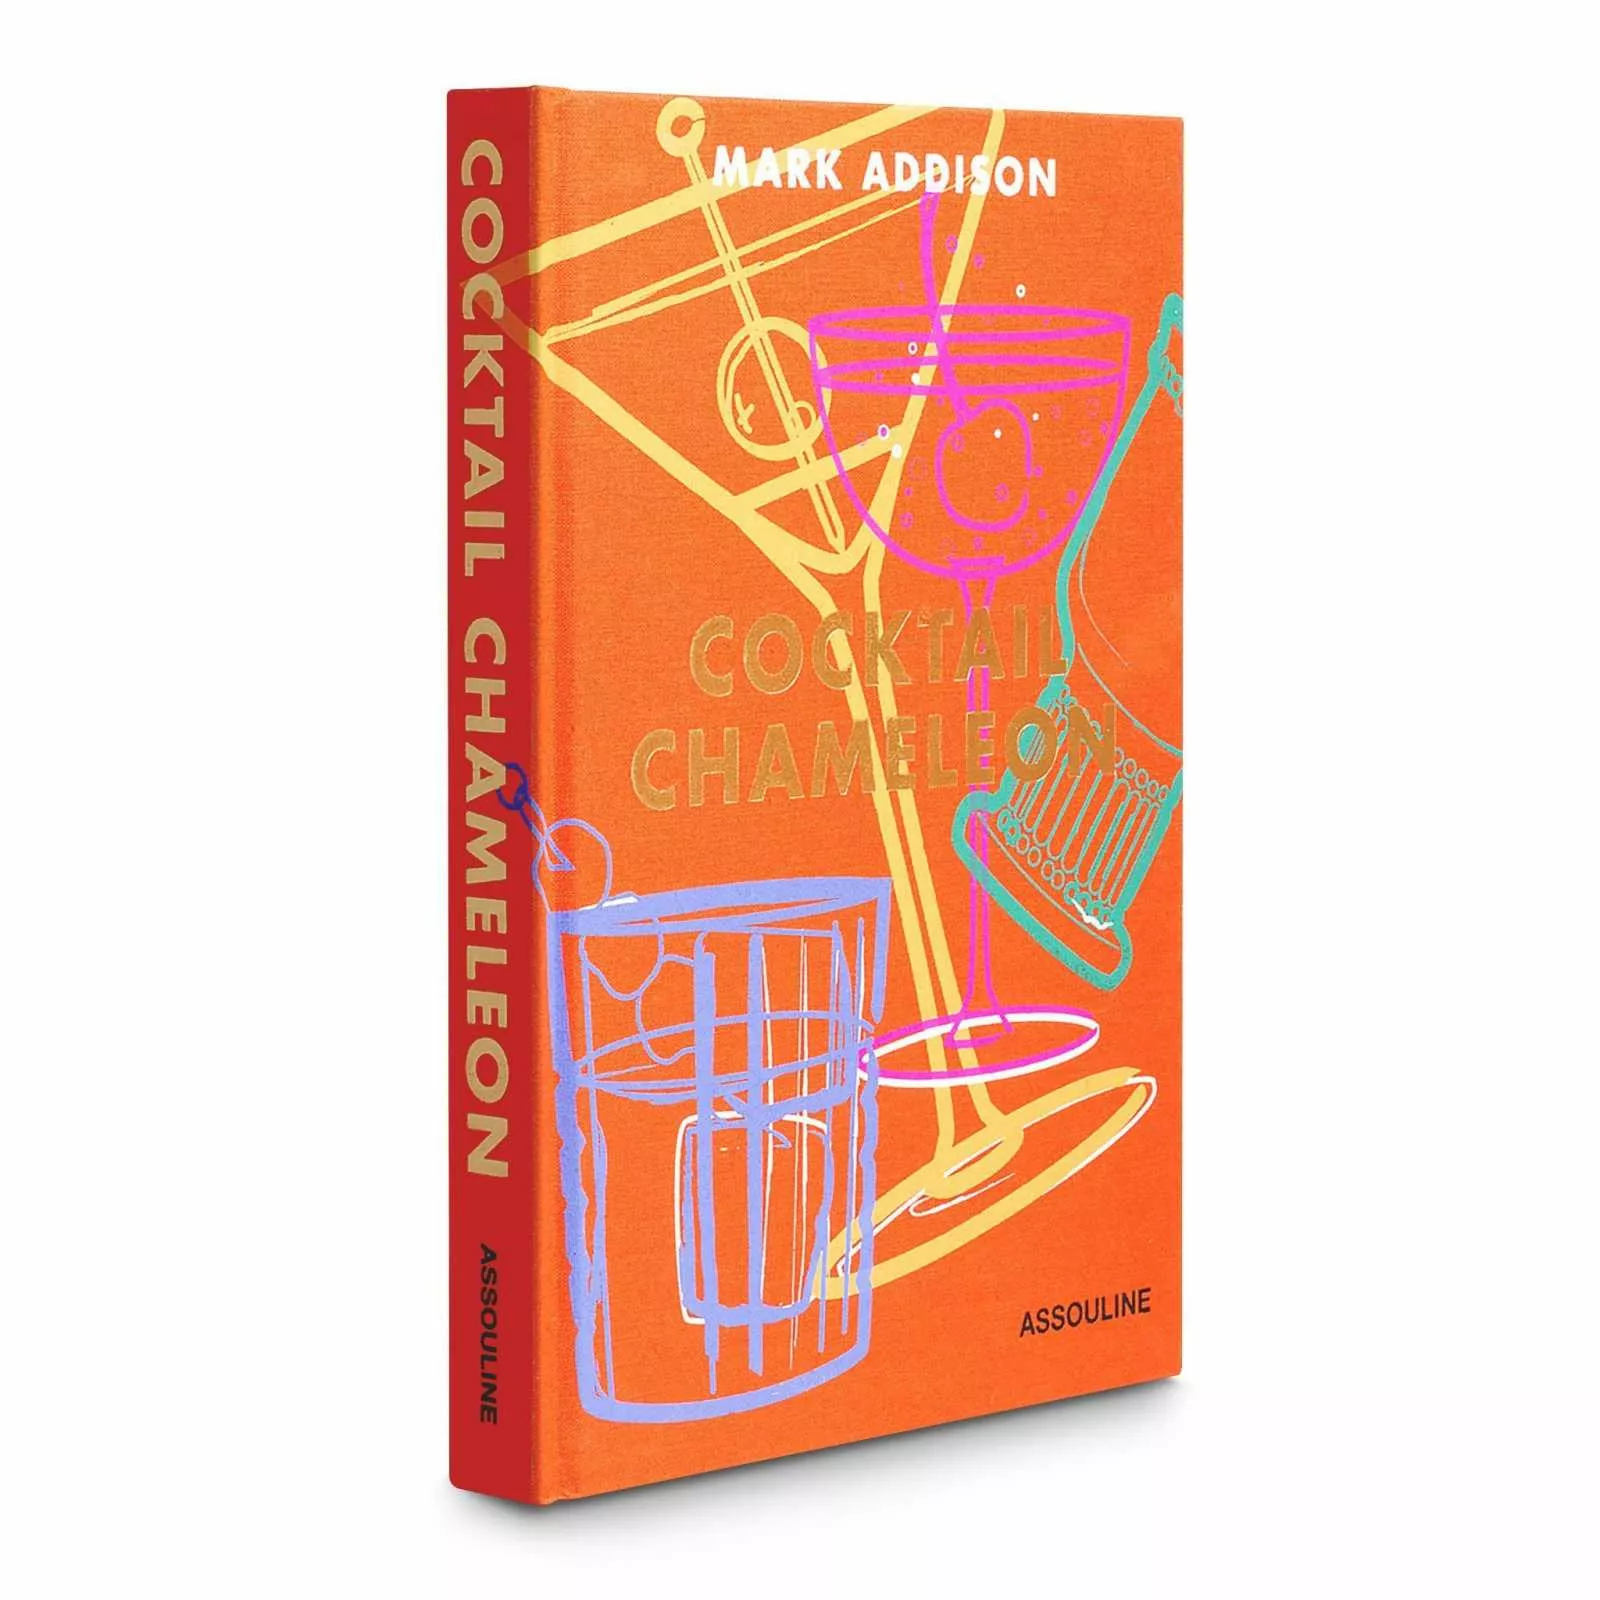 Книга "Cocktail Chameleon" Assouline Icons Collection (9781614286196) - Фото nav 5